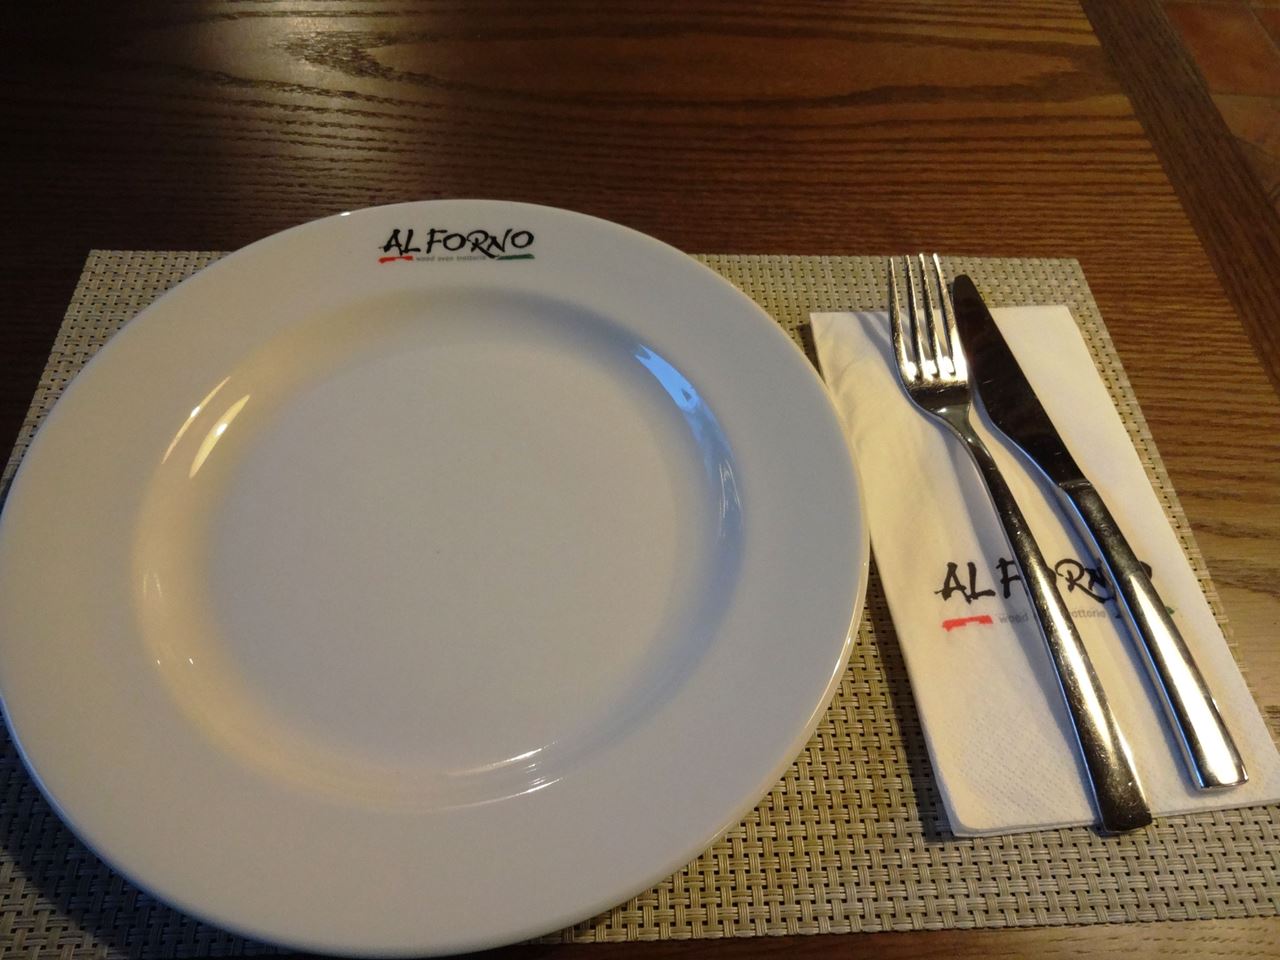 تجربتنا في مطعم الفورنو الايطالي - فرع ارابيلا